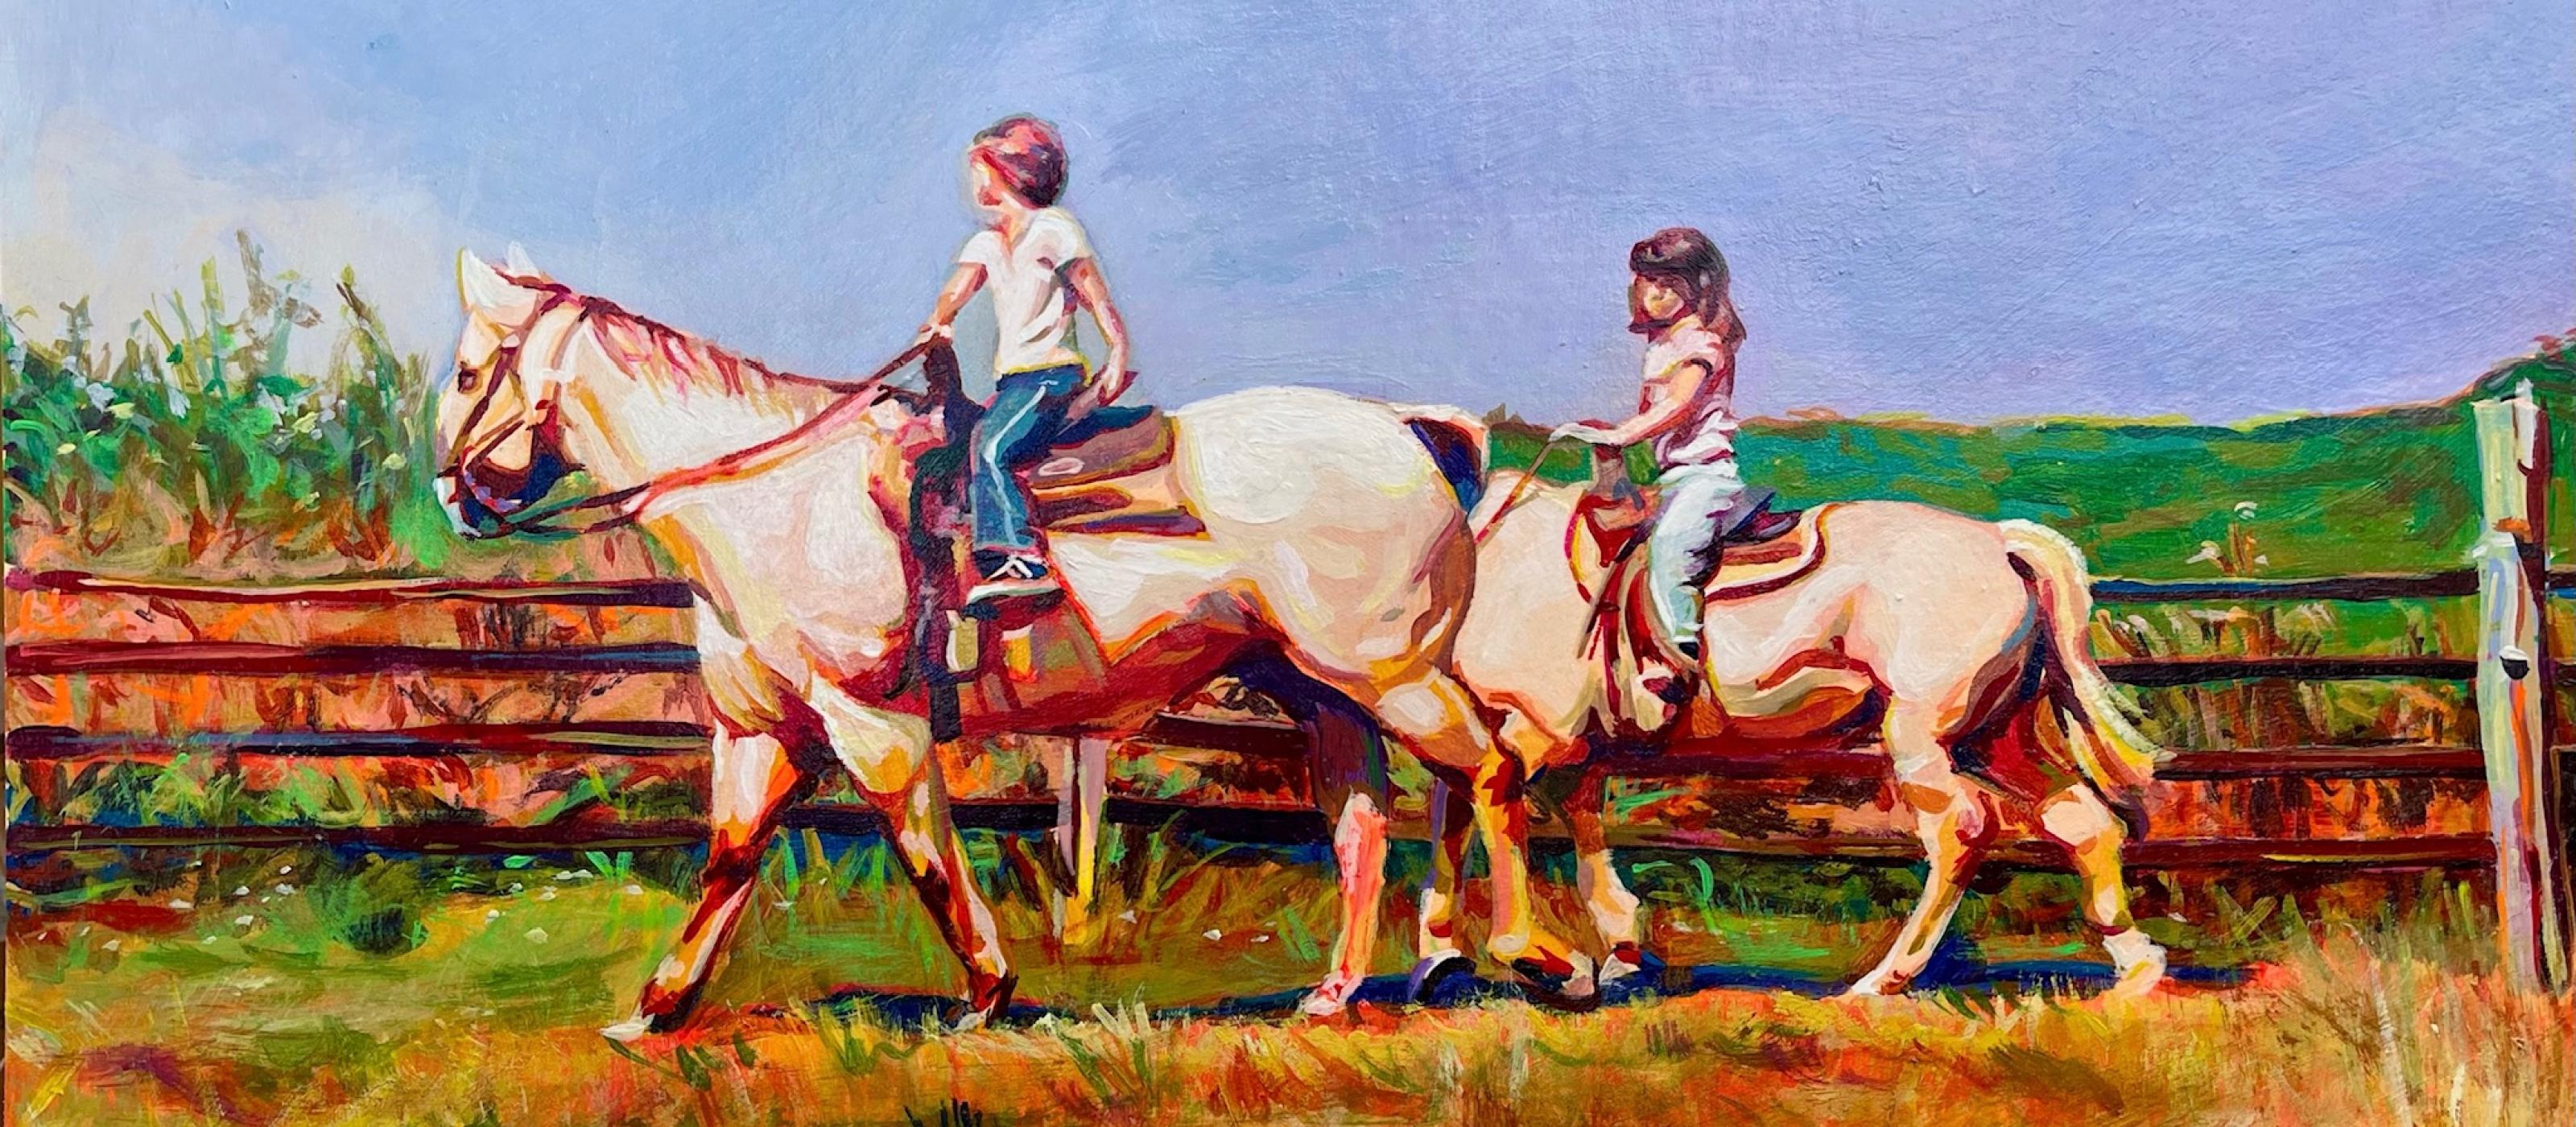 kids riding horses